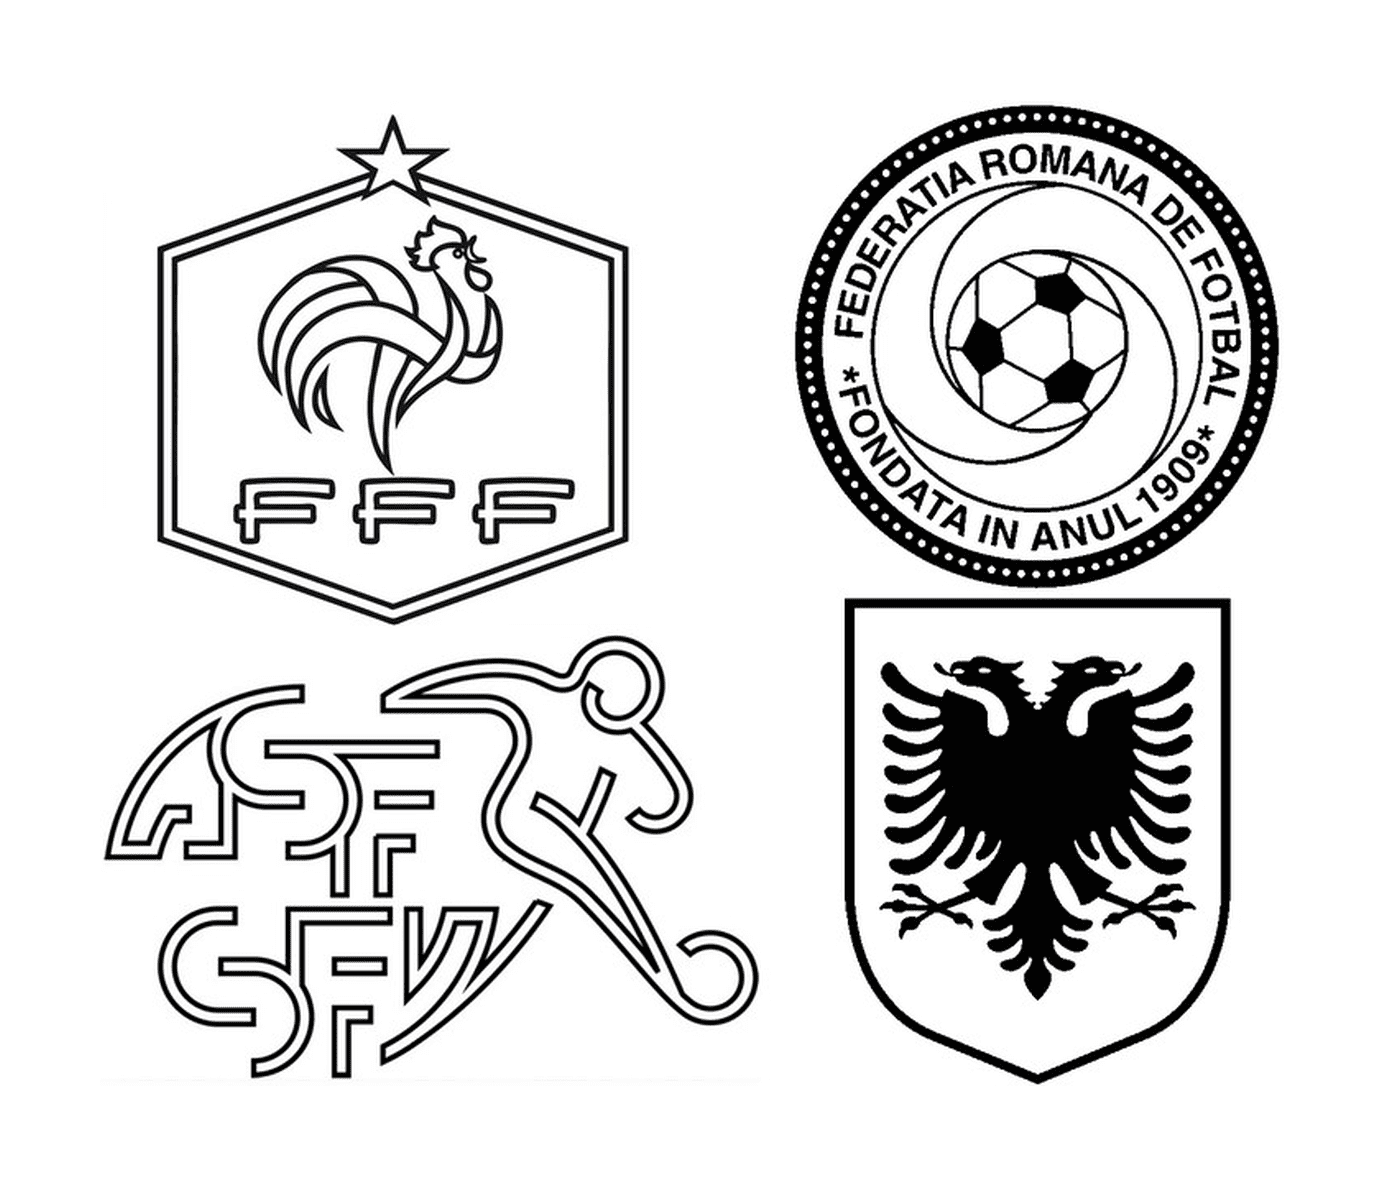   Les logos de quatre équipes de football 